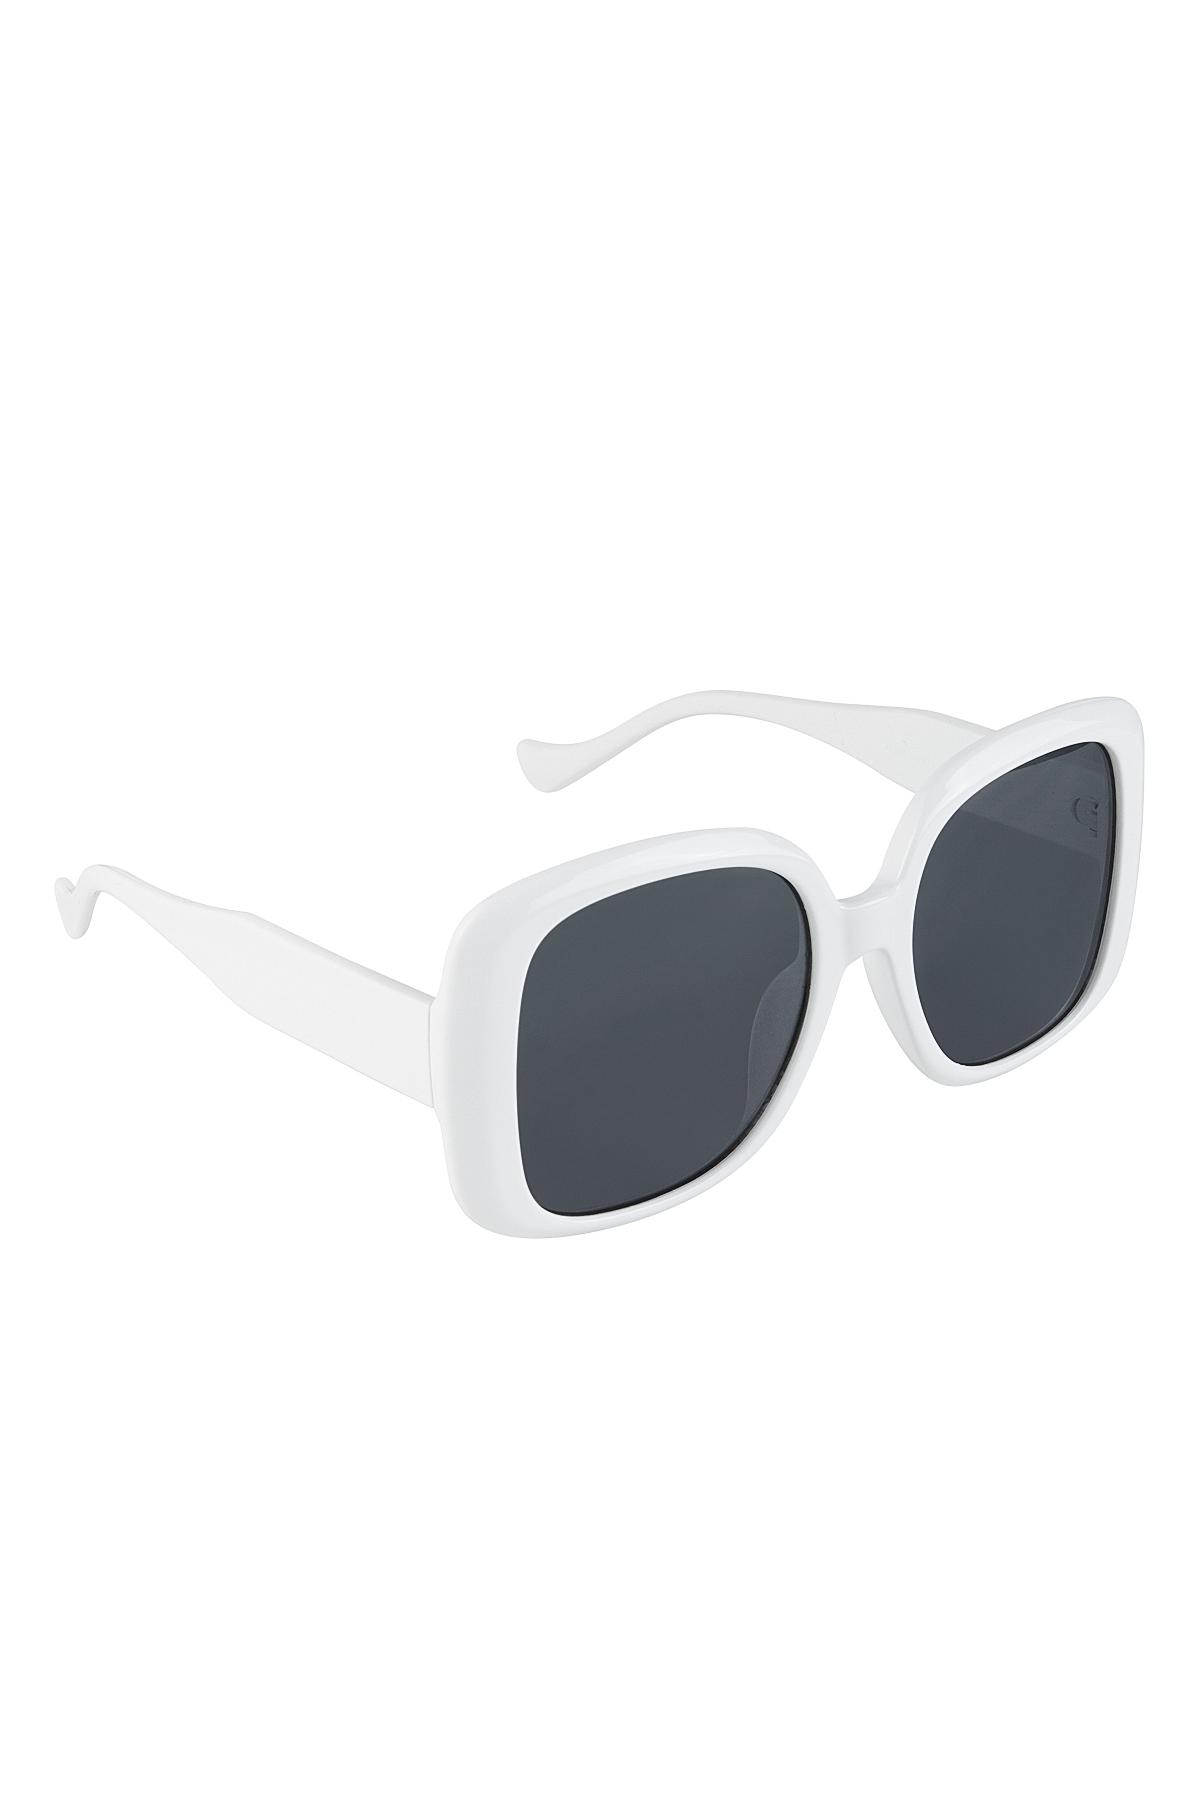 Sonnenbrille einfach Weiß PC One size